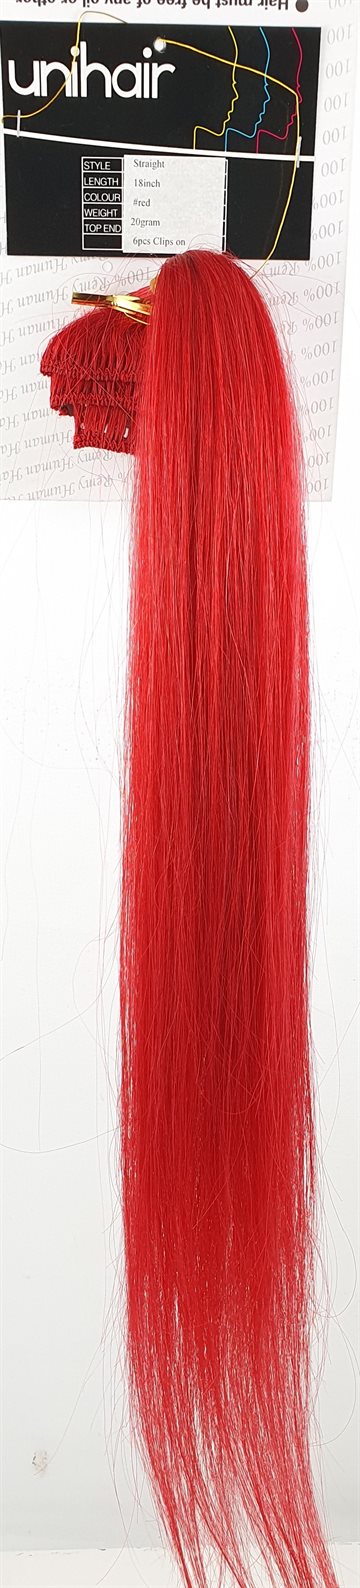 Human Hair - 6 clips på. Farve Rød - 18".